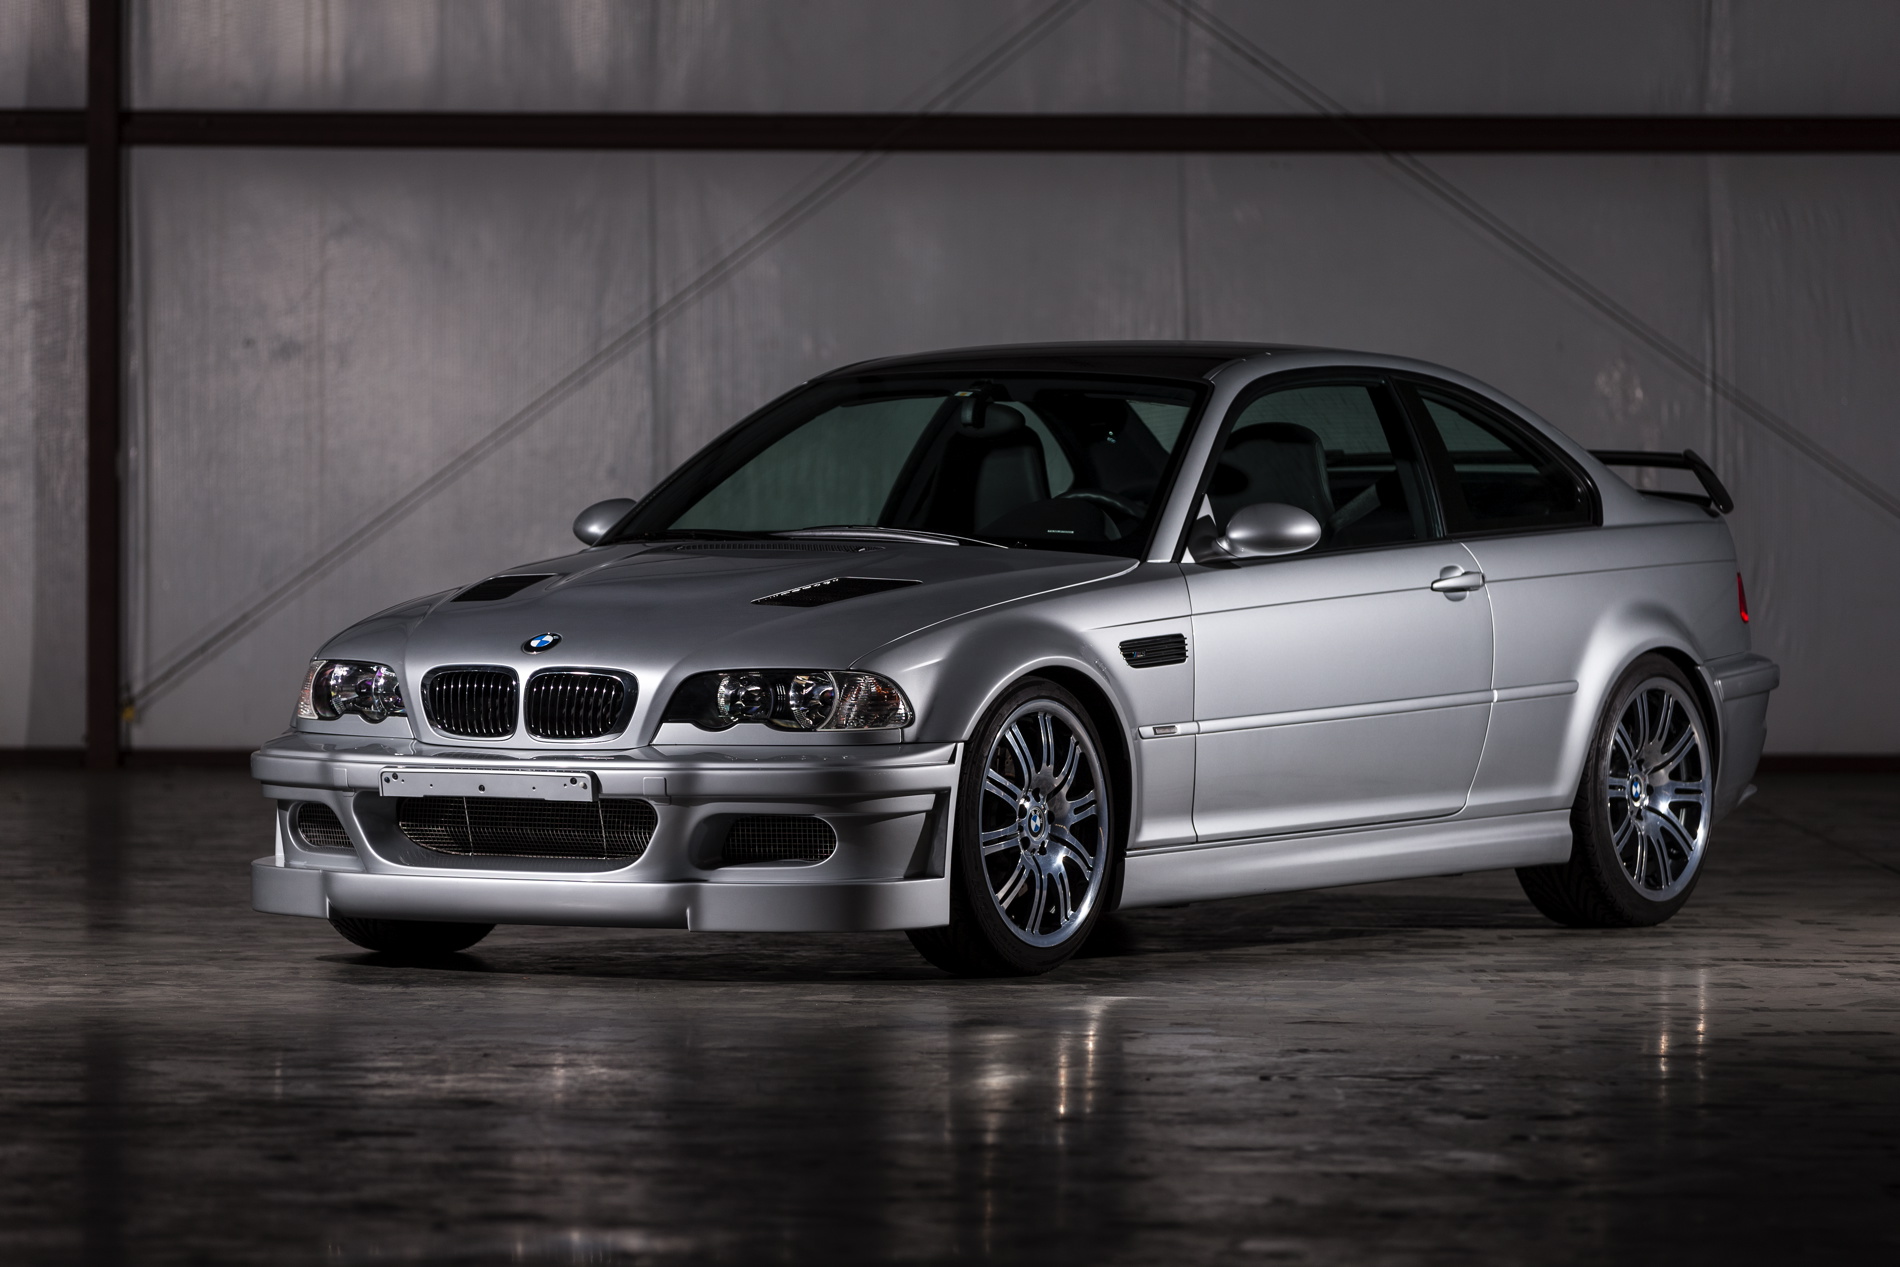 BMW-M3-GTR-Road-version-1900x1200-images-05